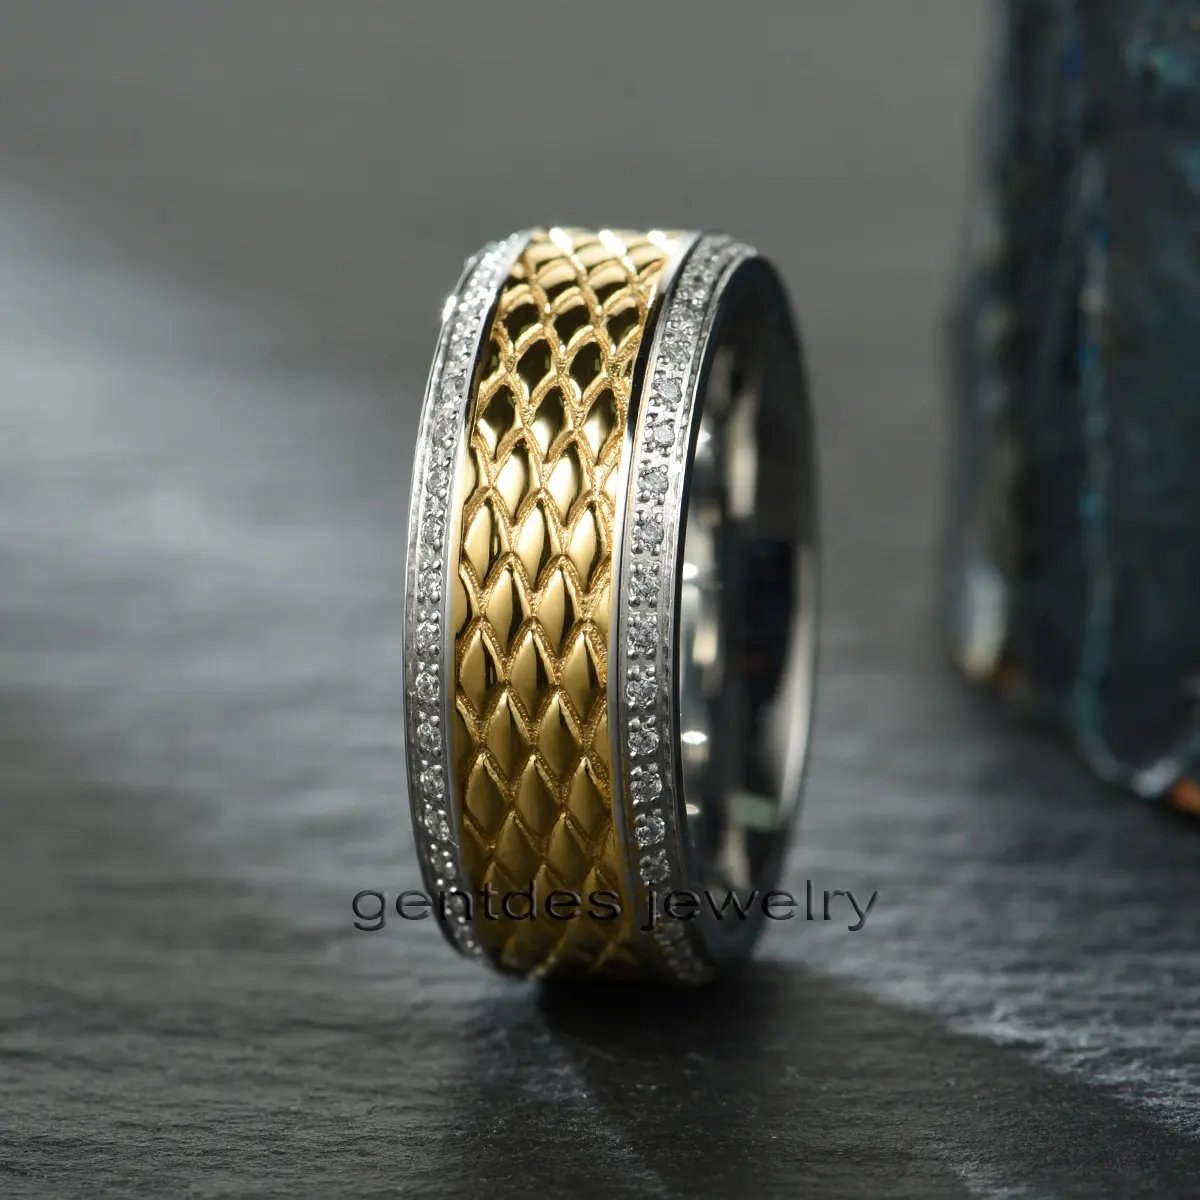 Fabricación Gentdes de joyas, anillos planos de cromo de cobalto de 8mm, piedra de circón con incrustaciones con chapado en oro en el centro para banda de boda para hombres